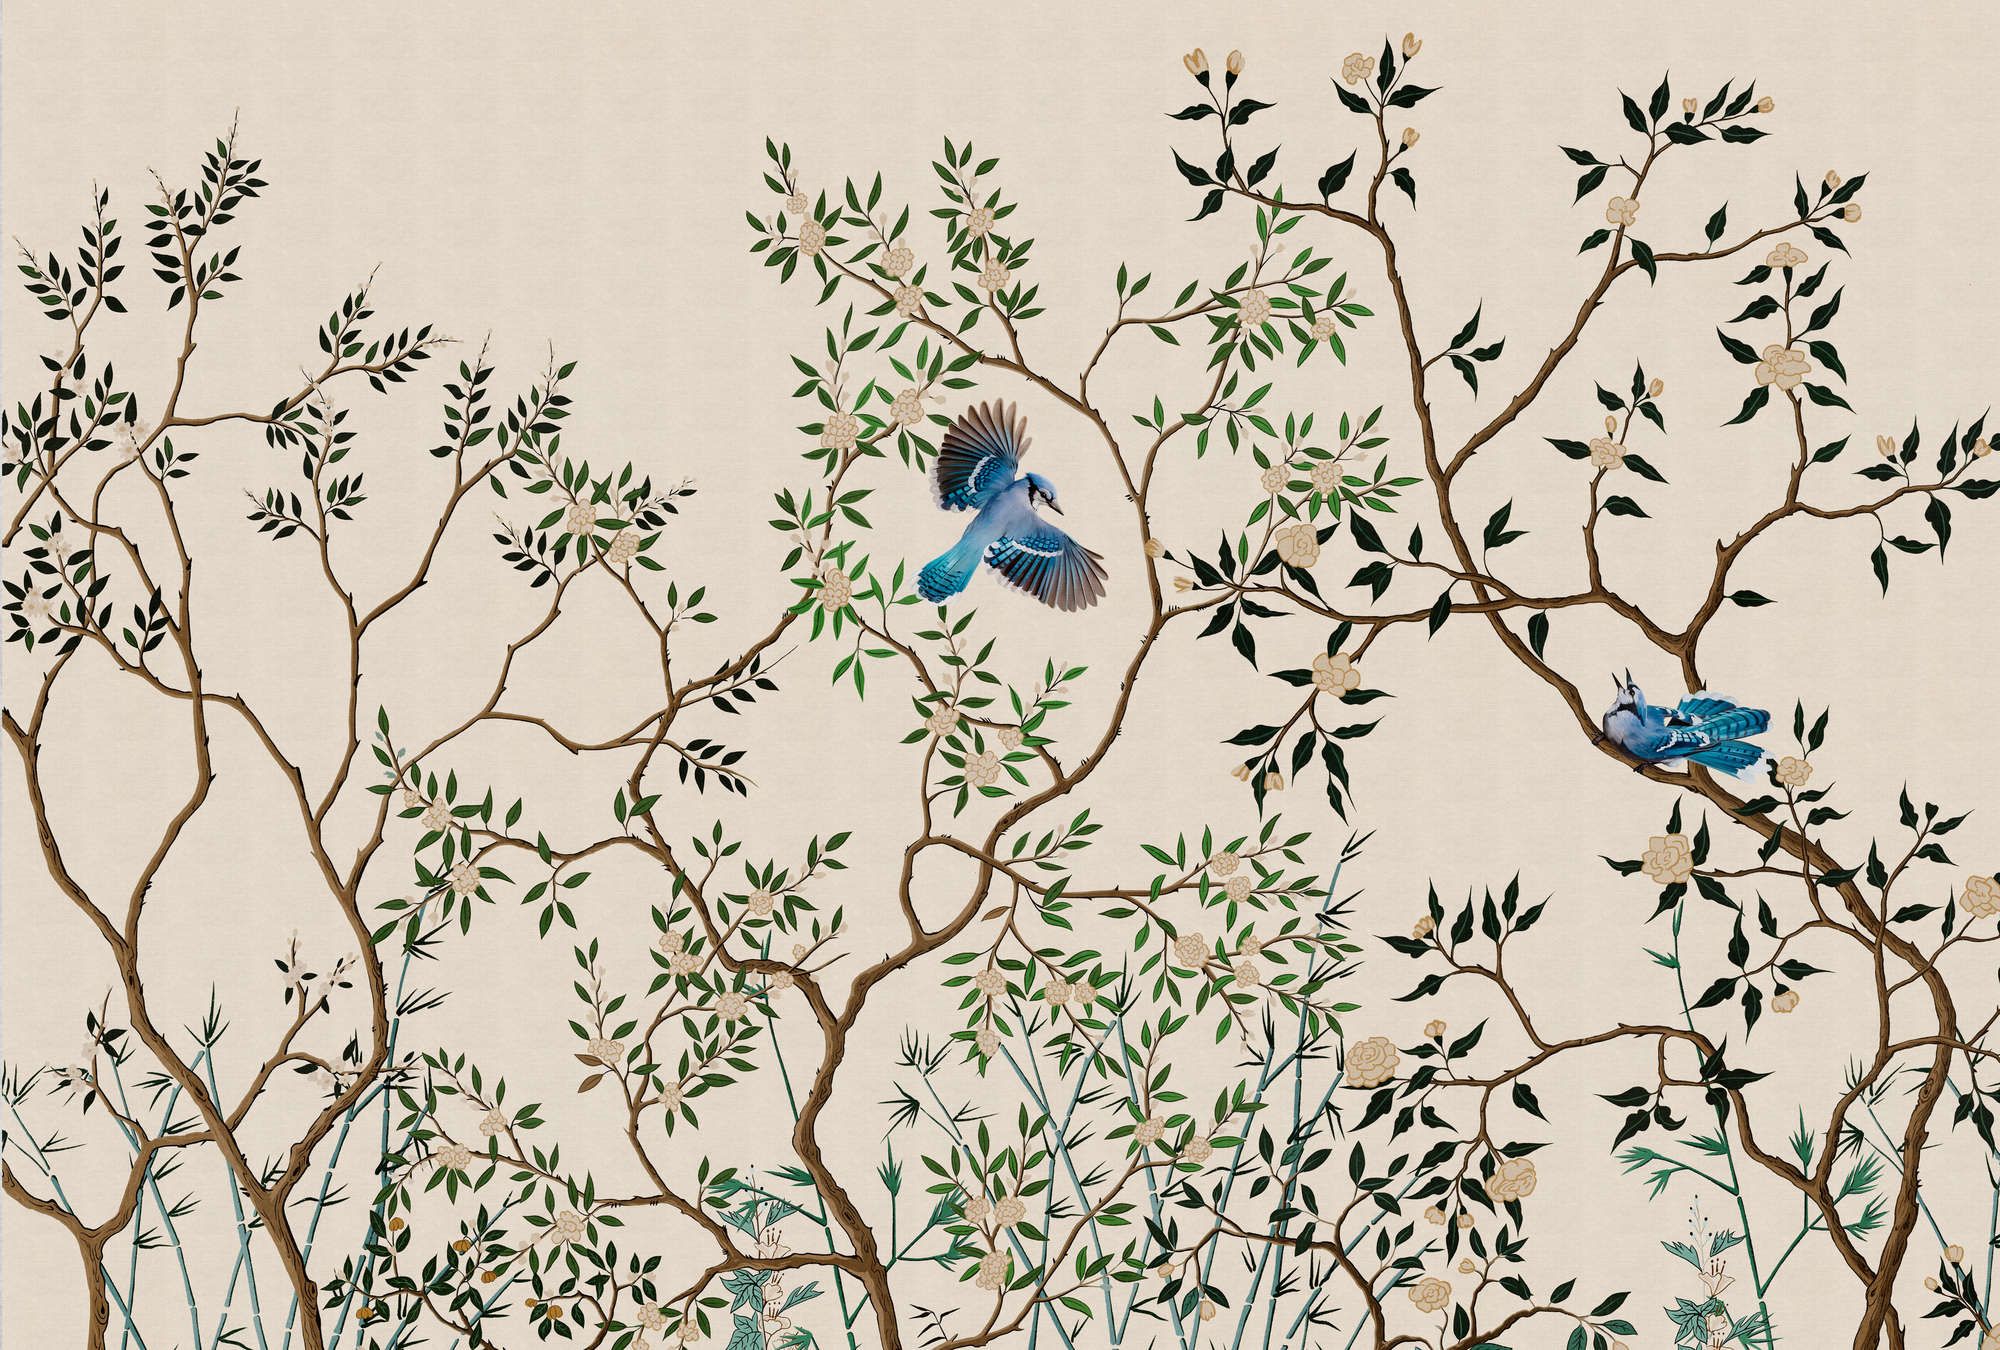             papier peint en papier panoramique »merula« - branches & oiseaux - clair avec structure lin | Intissé premium lisse et légèrement brillant
        